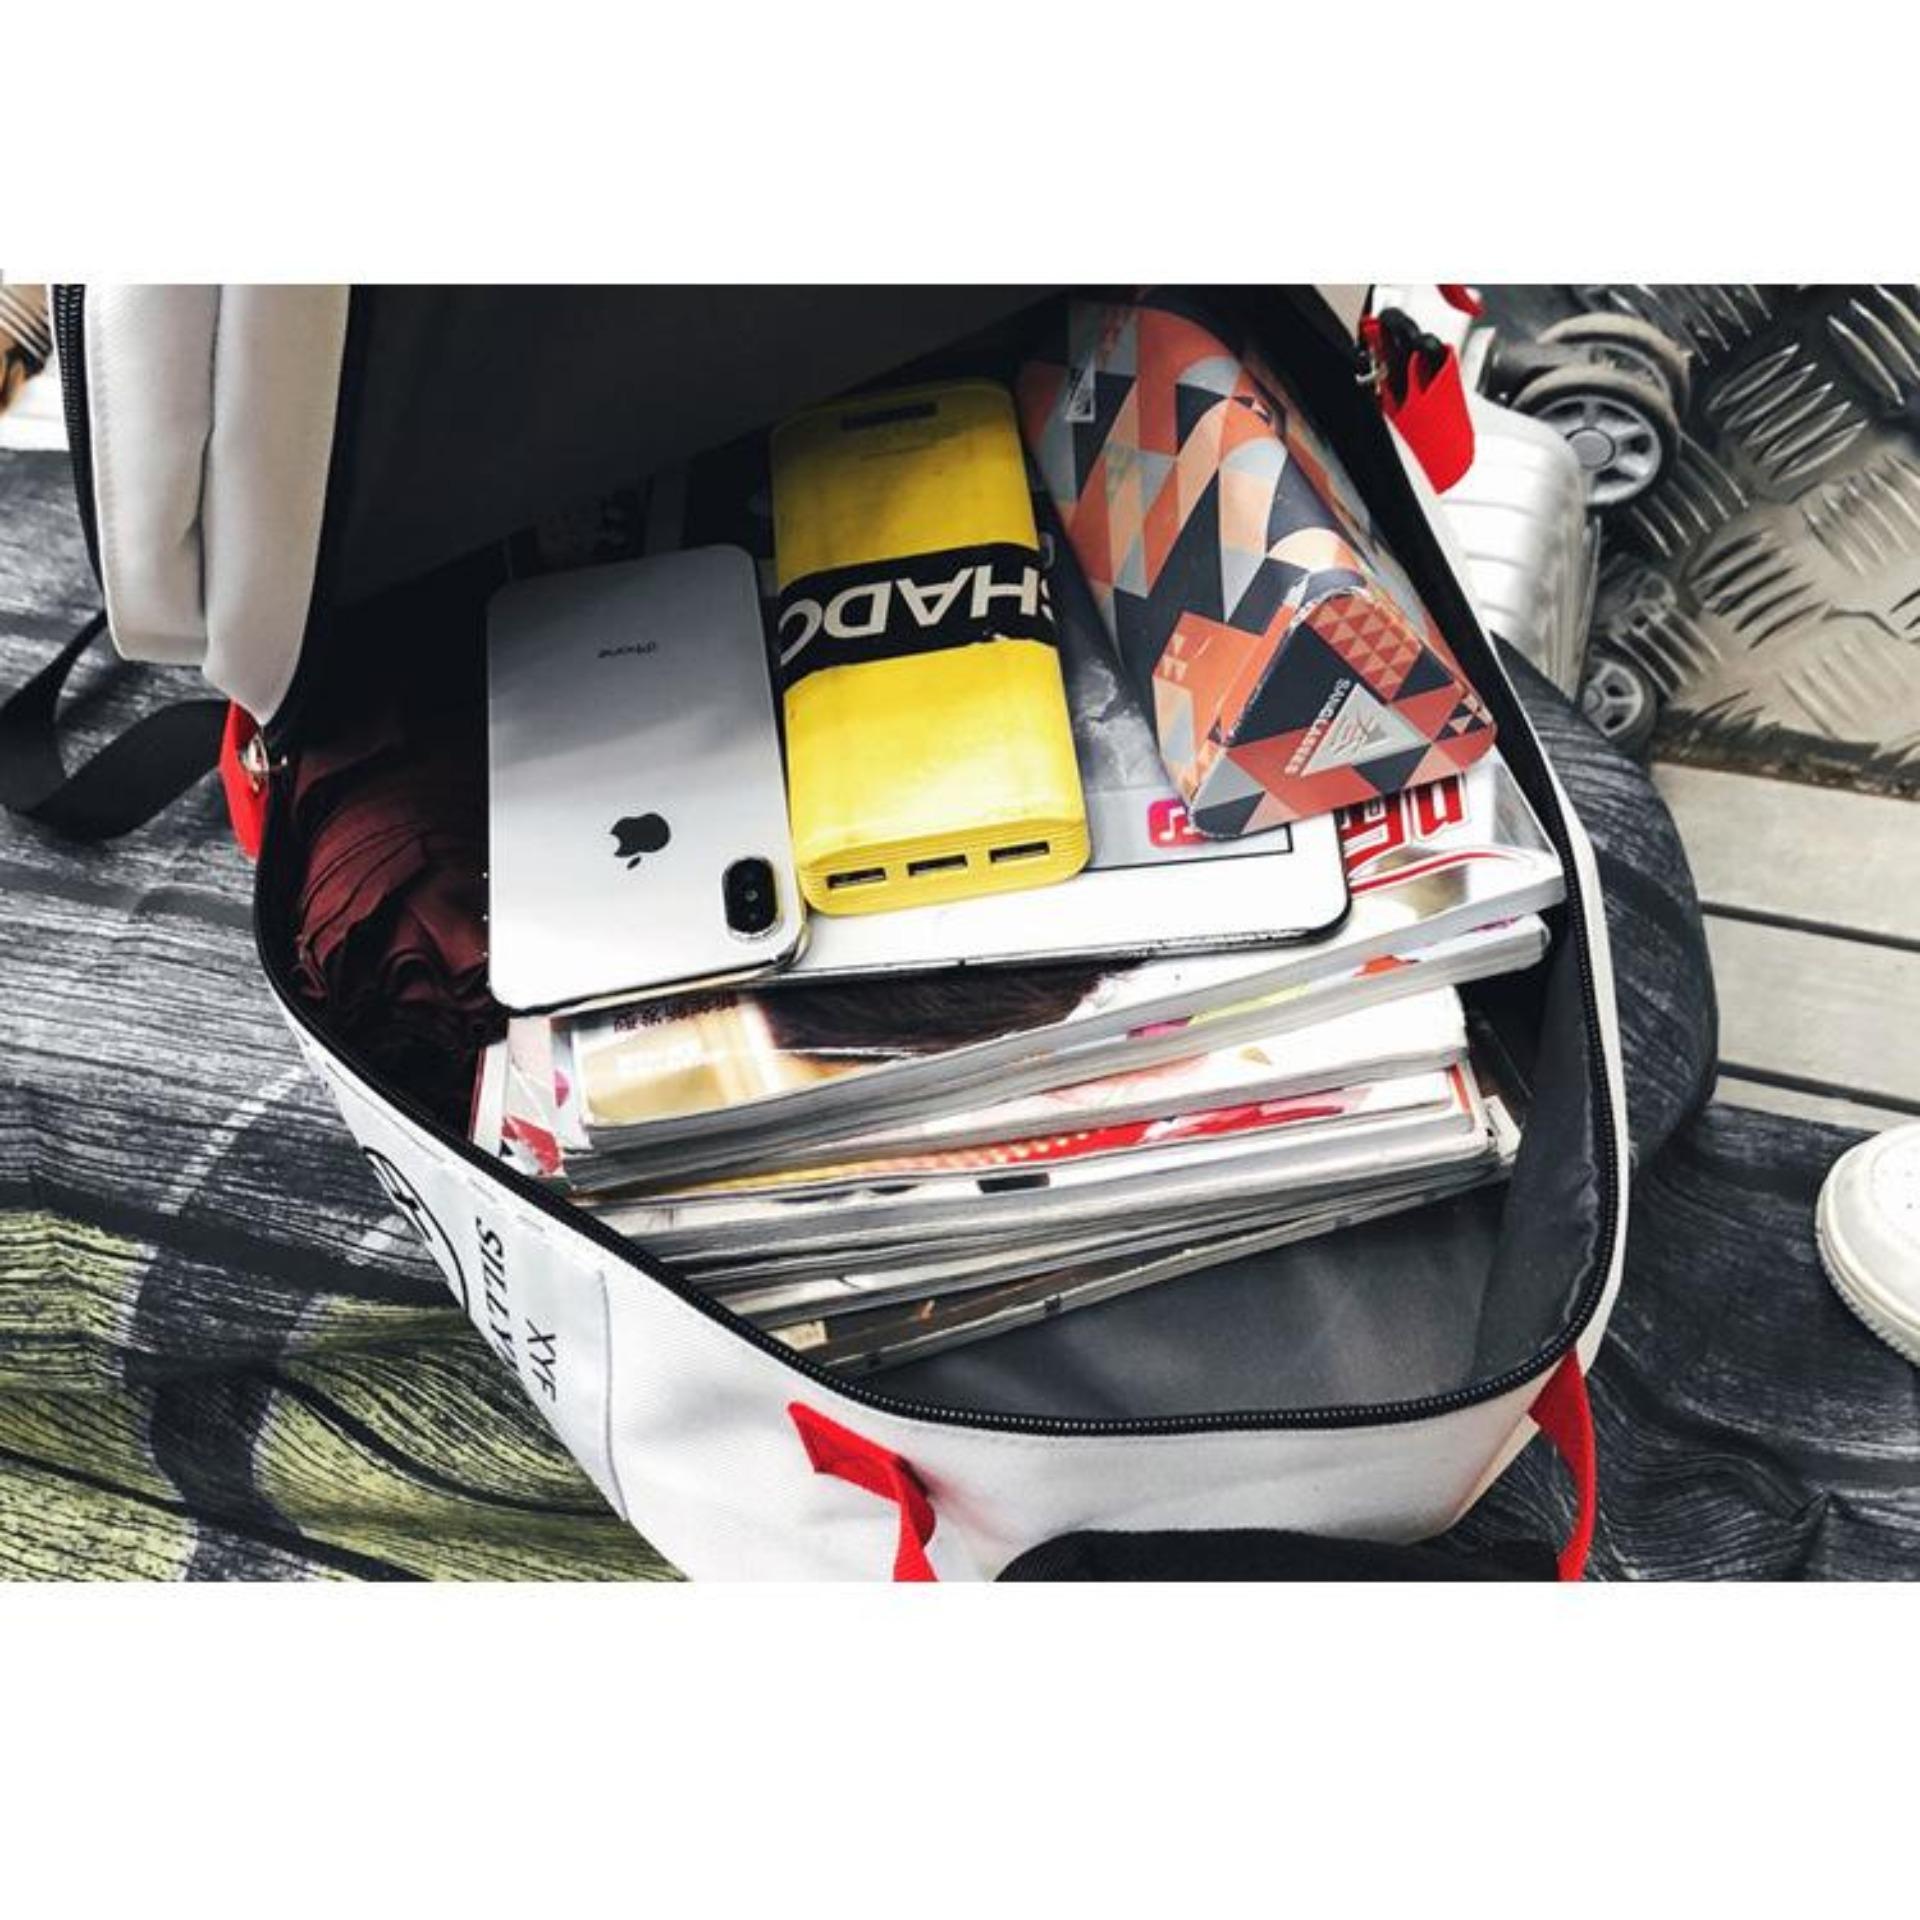 Balo nam nữ thời trang đi học hottrend 2019 có ngăn chứa laptop phong cách style HÀN QUỐC ( TRắng Đen) B1